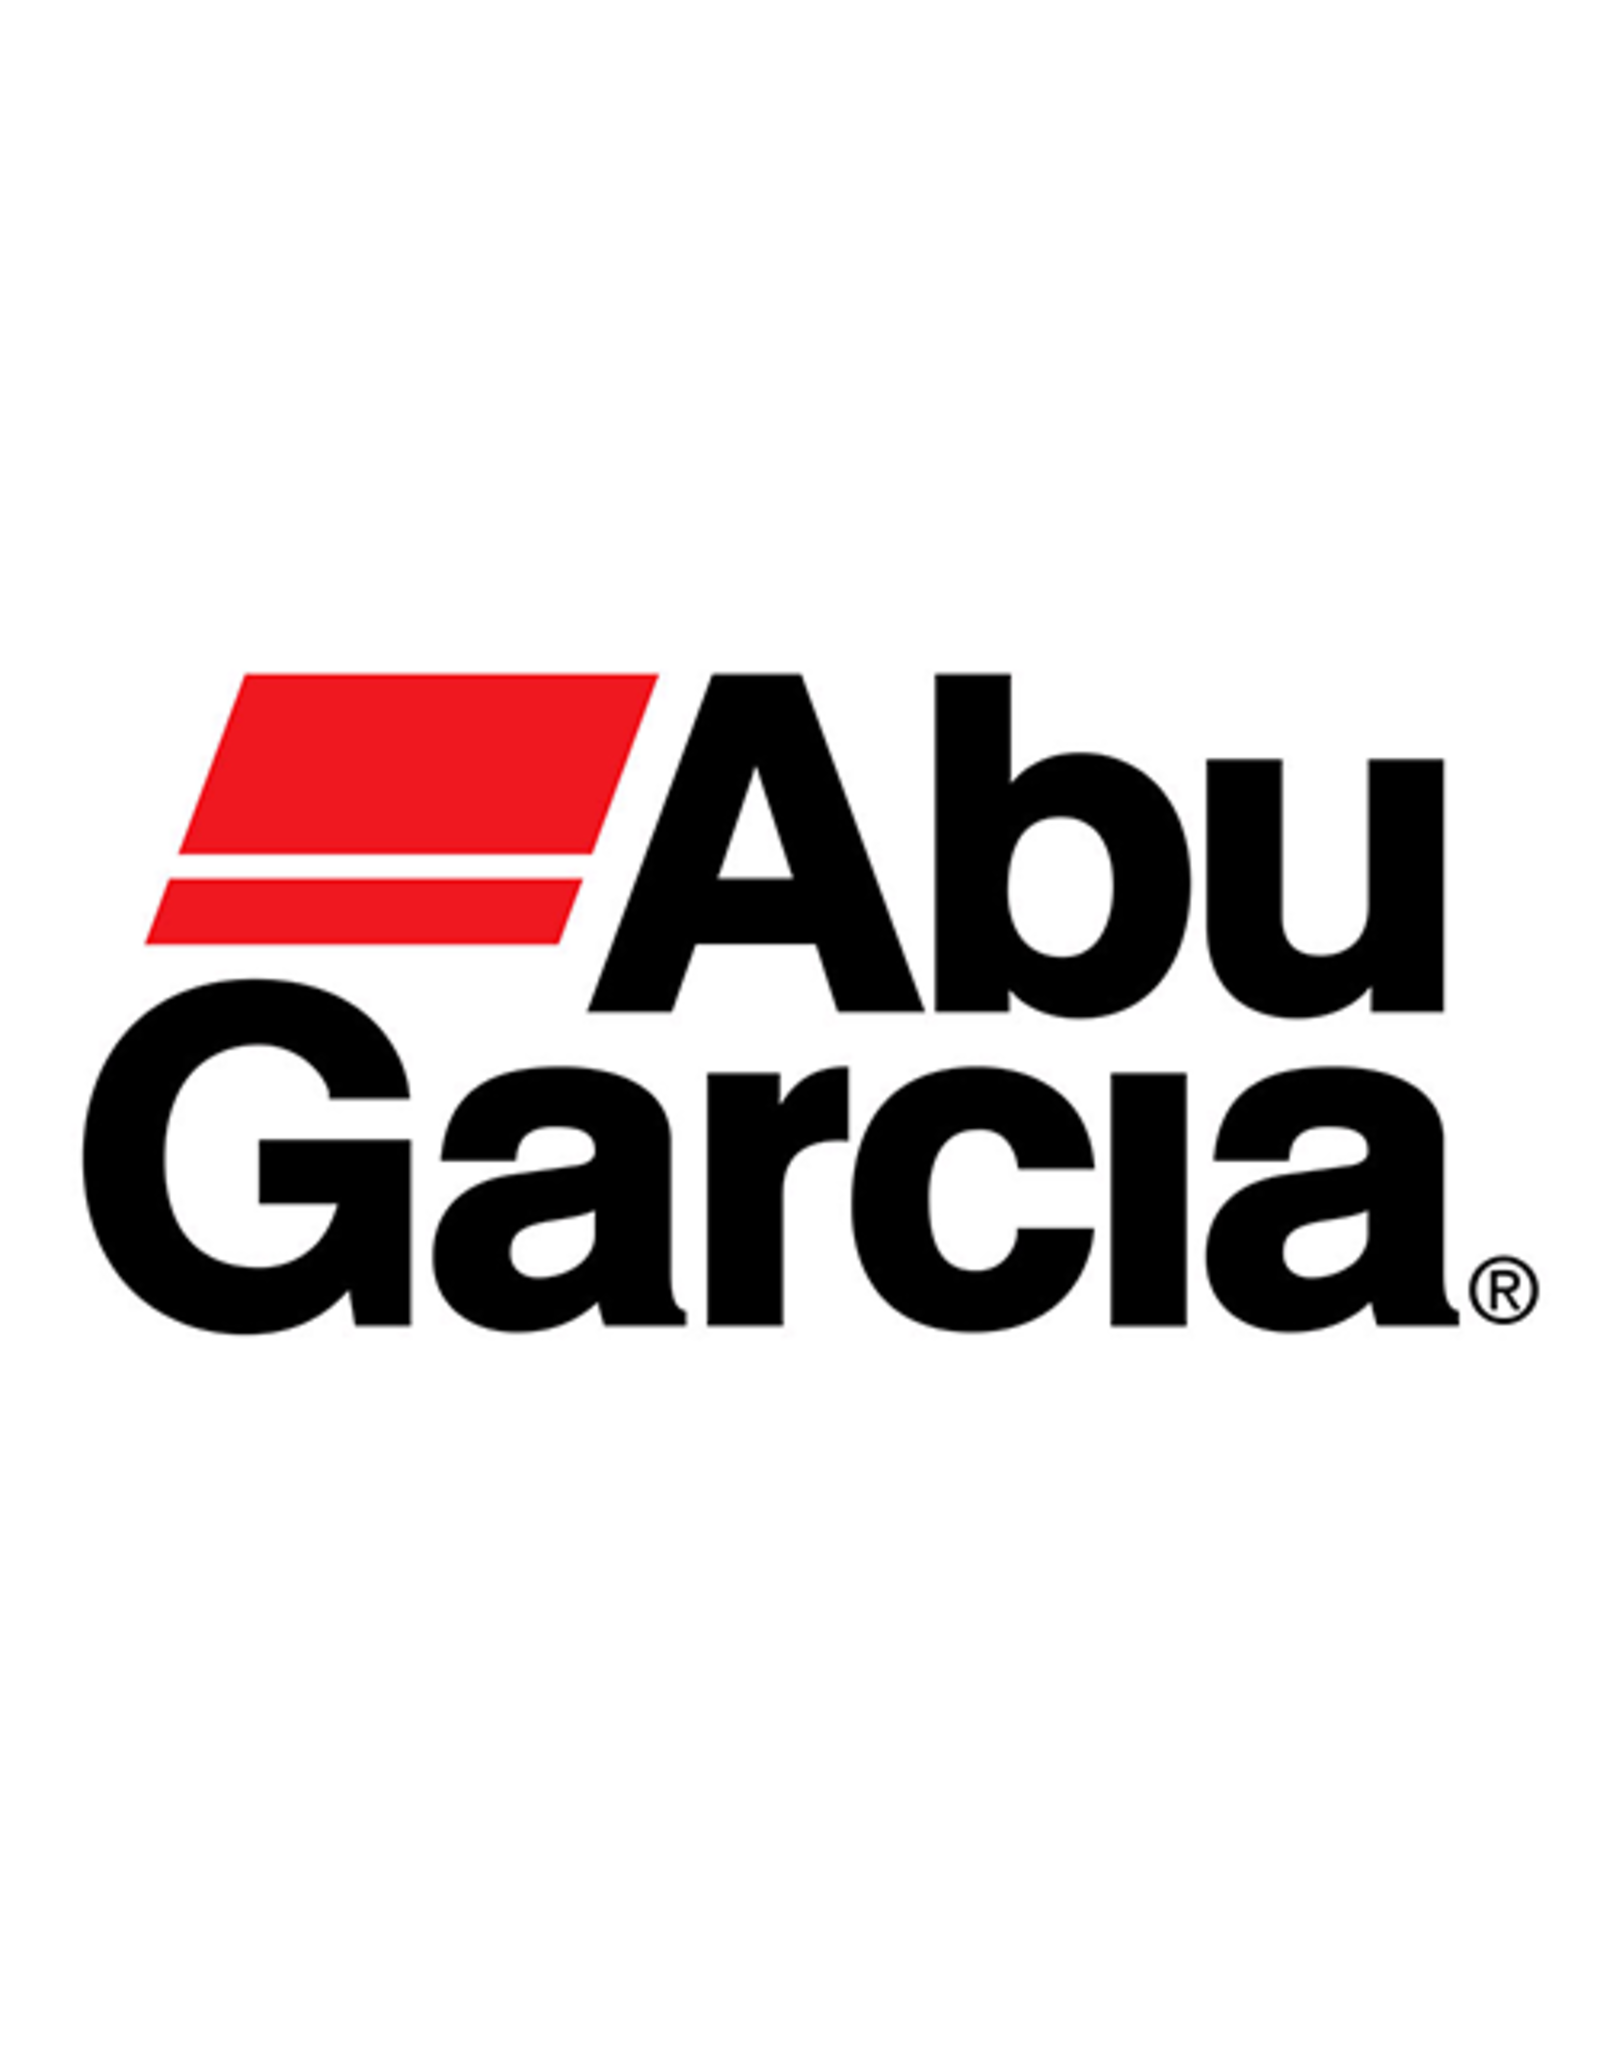 Abu Garcia 1134451  GEAR